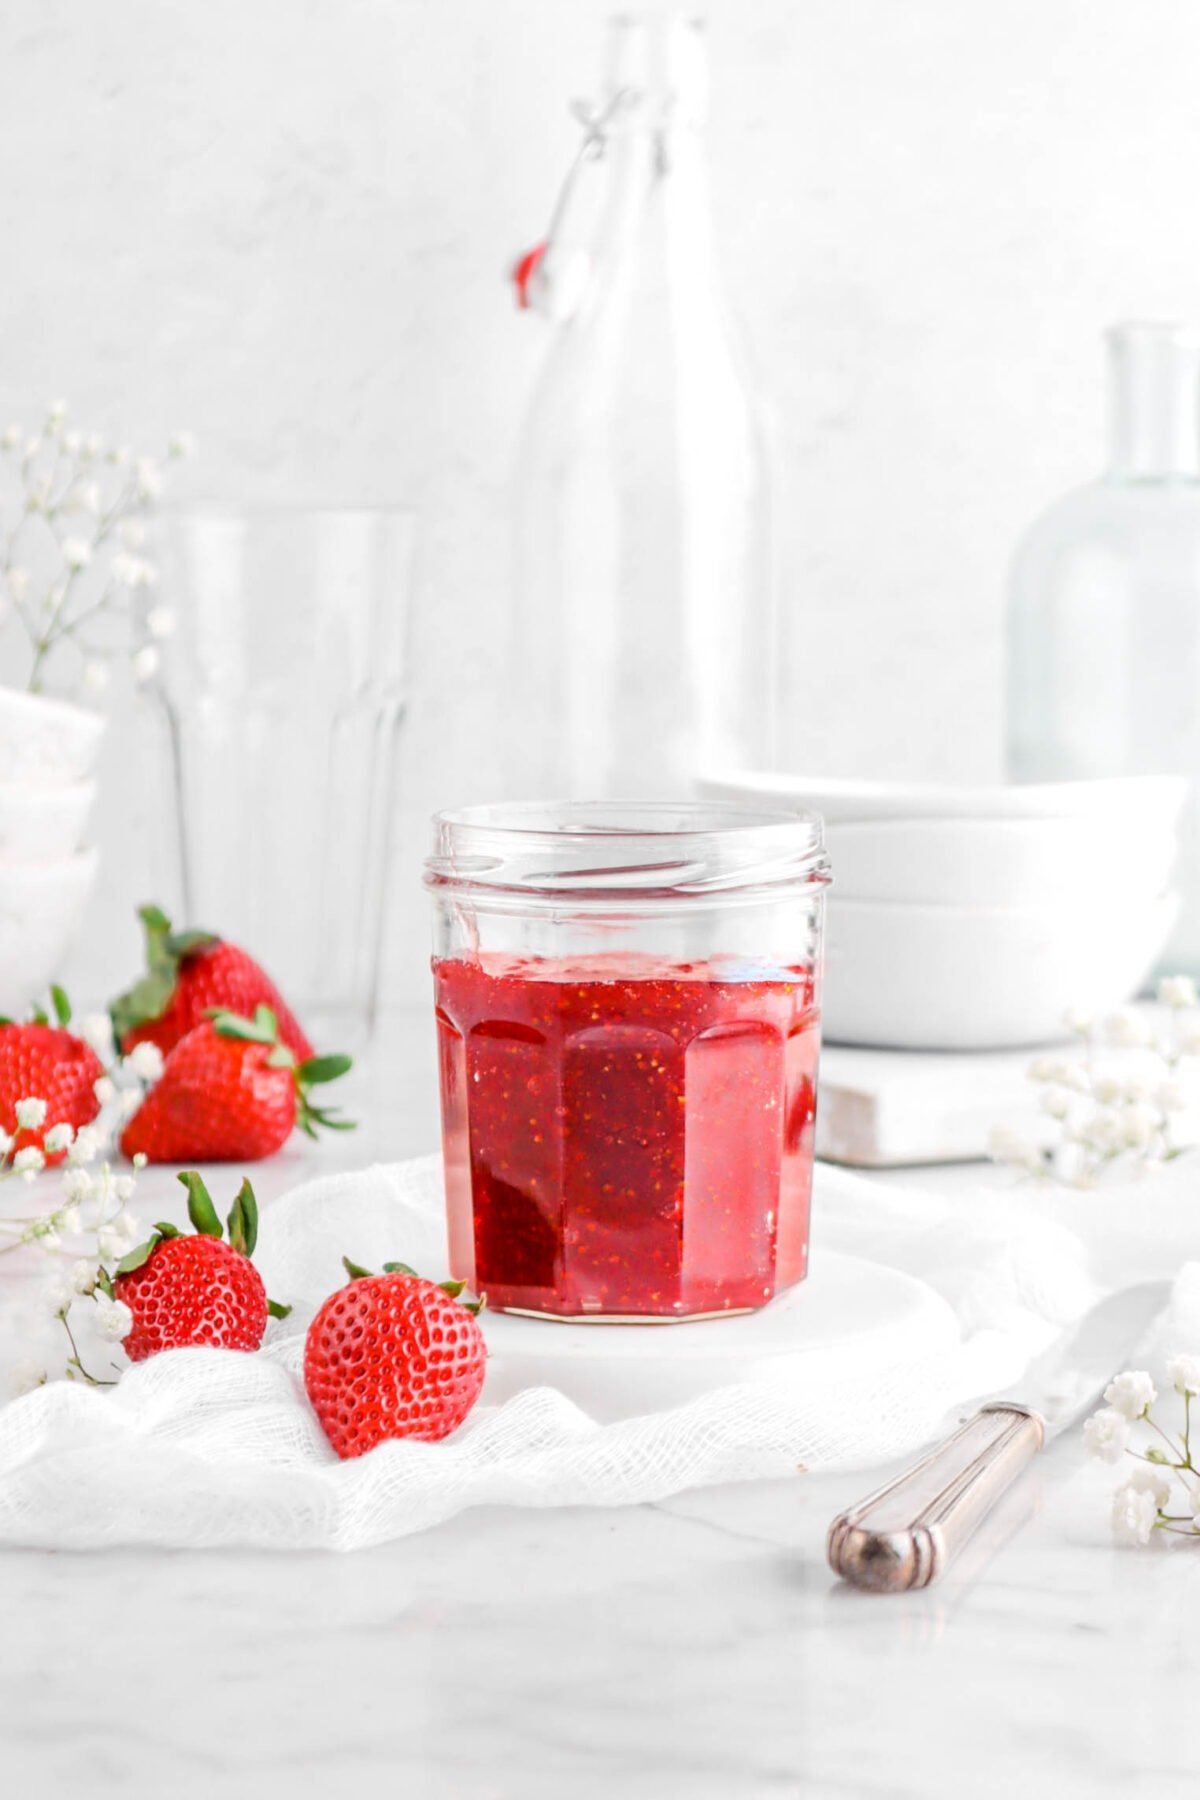 Homemade Strawberry Jam | Vegan + Gluten-Free!